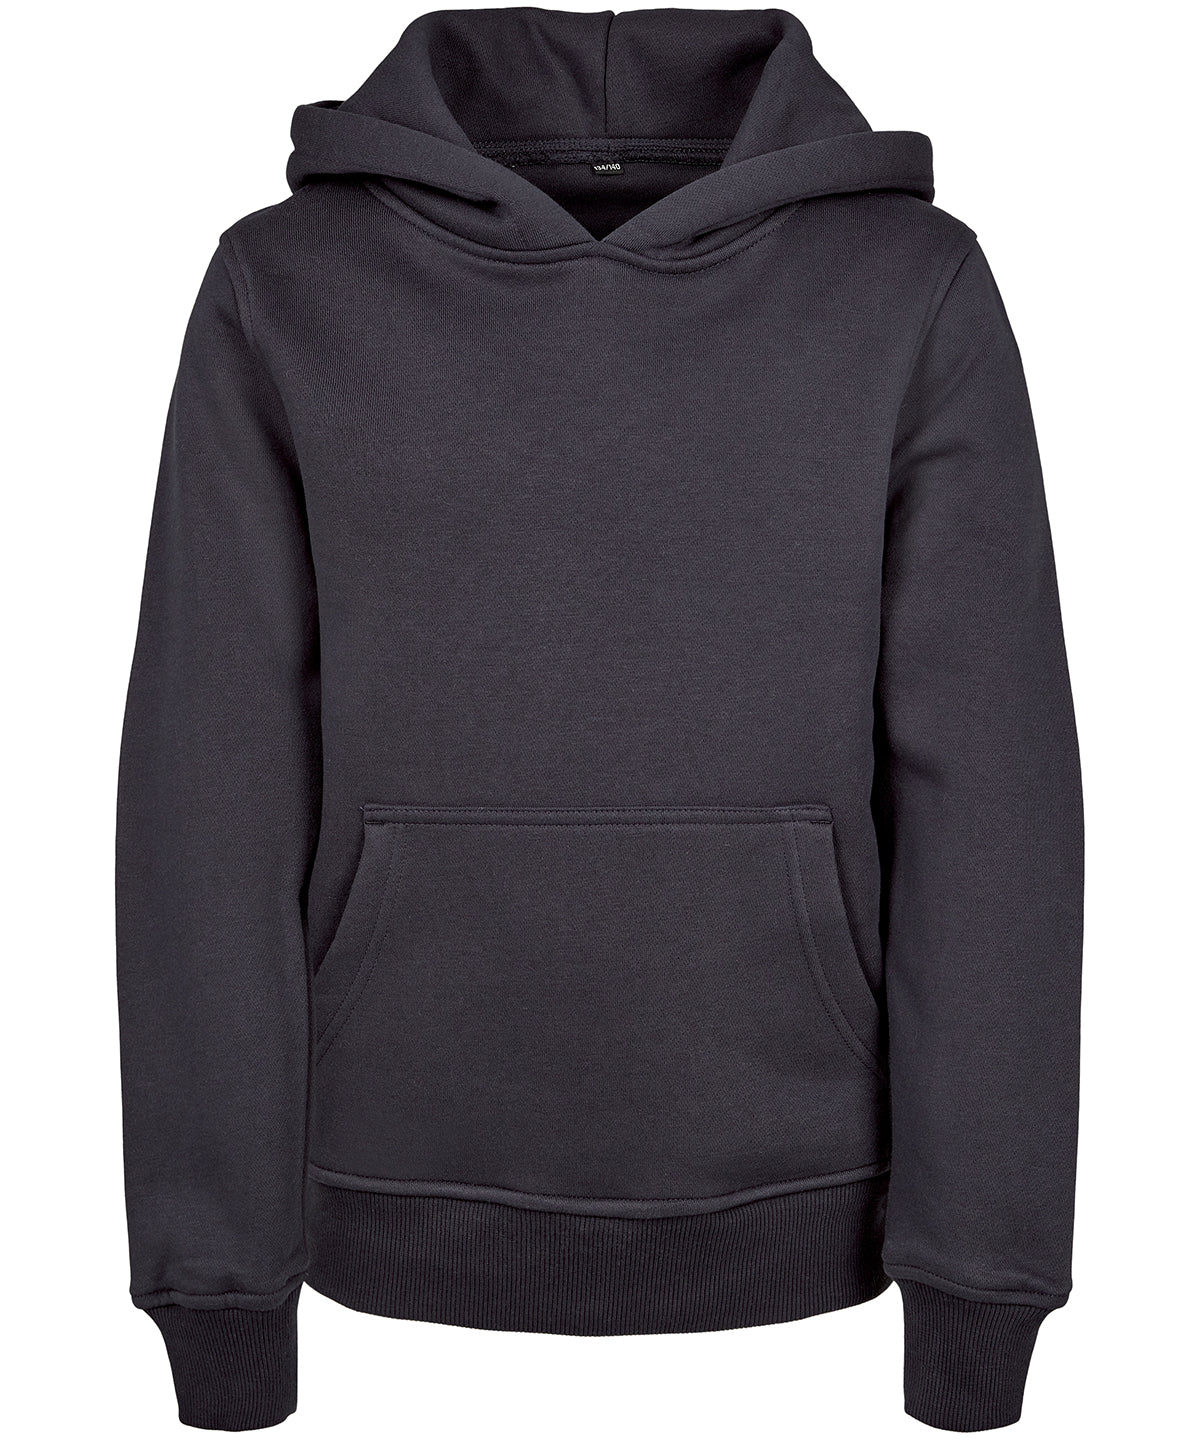 Personalised Hoodies - Black Build Your Brand Kids basic hoodie